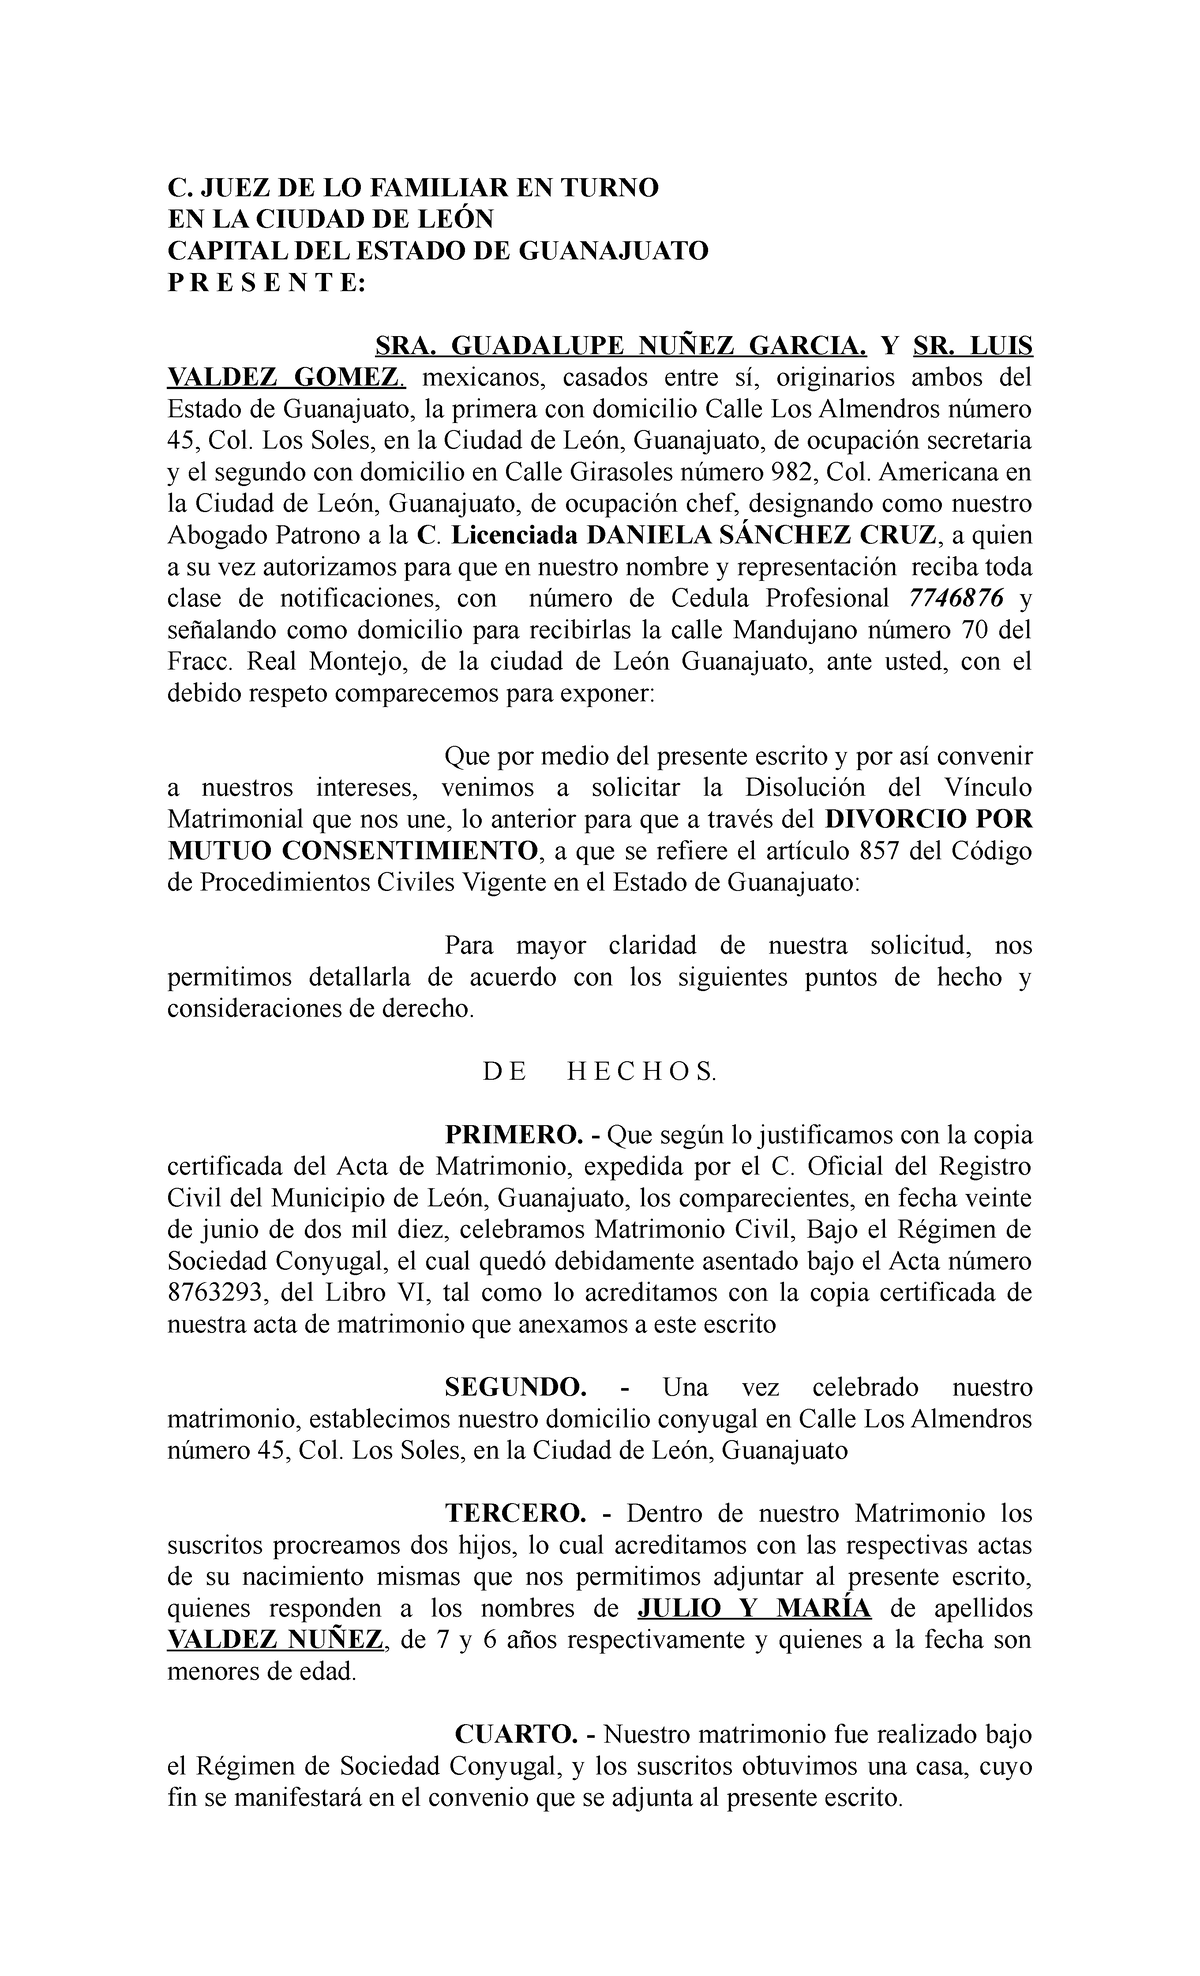 Formato Juicio de Divorcio Voluntario guanajuato - C. JUEZ DE LO FAMILIAR  EN TURNO EN LA CIUDAD DE - Studocu